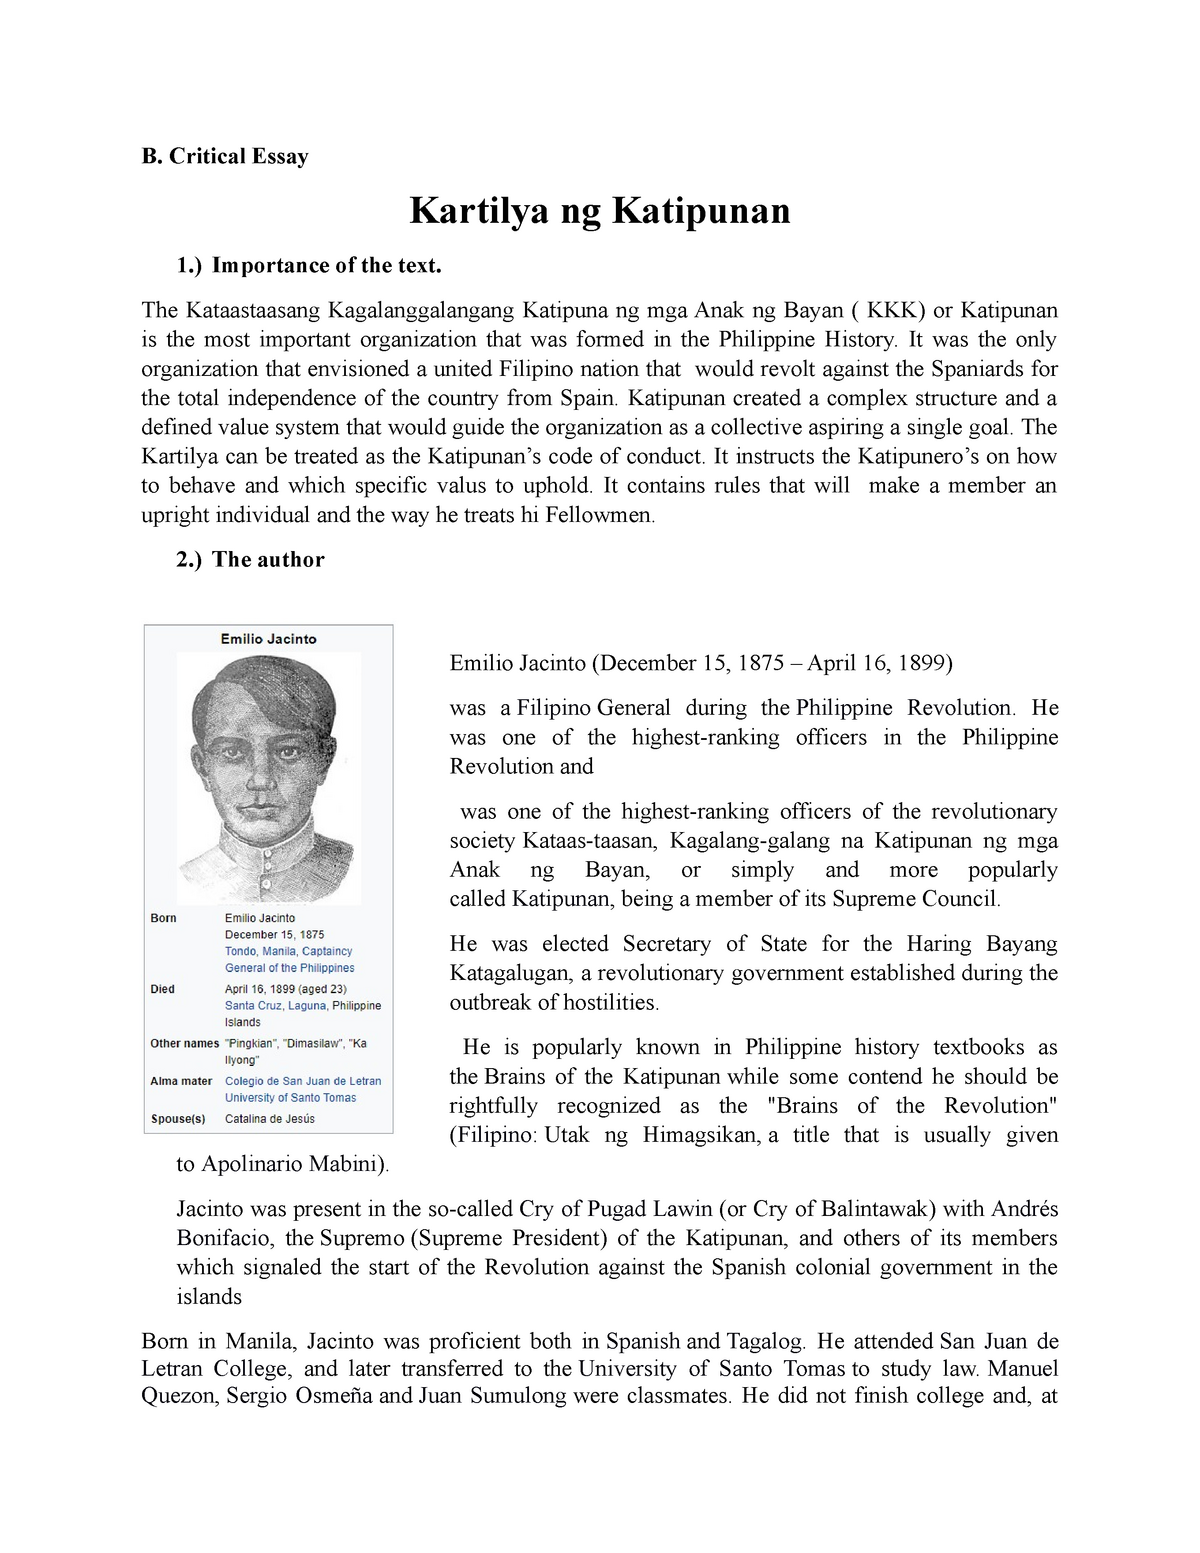 critical essay about kartilya ng katipunan pdf